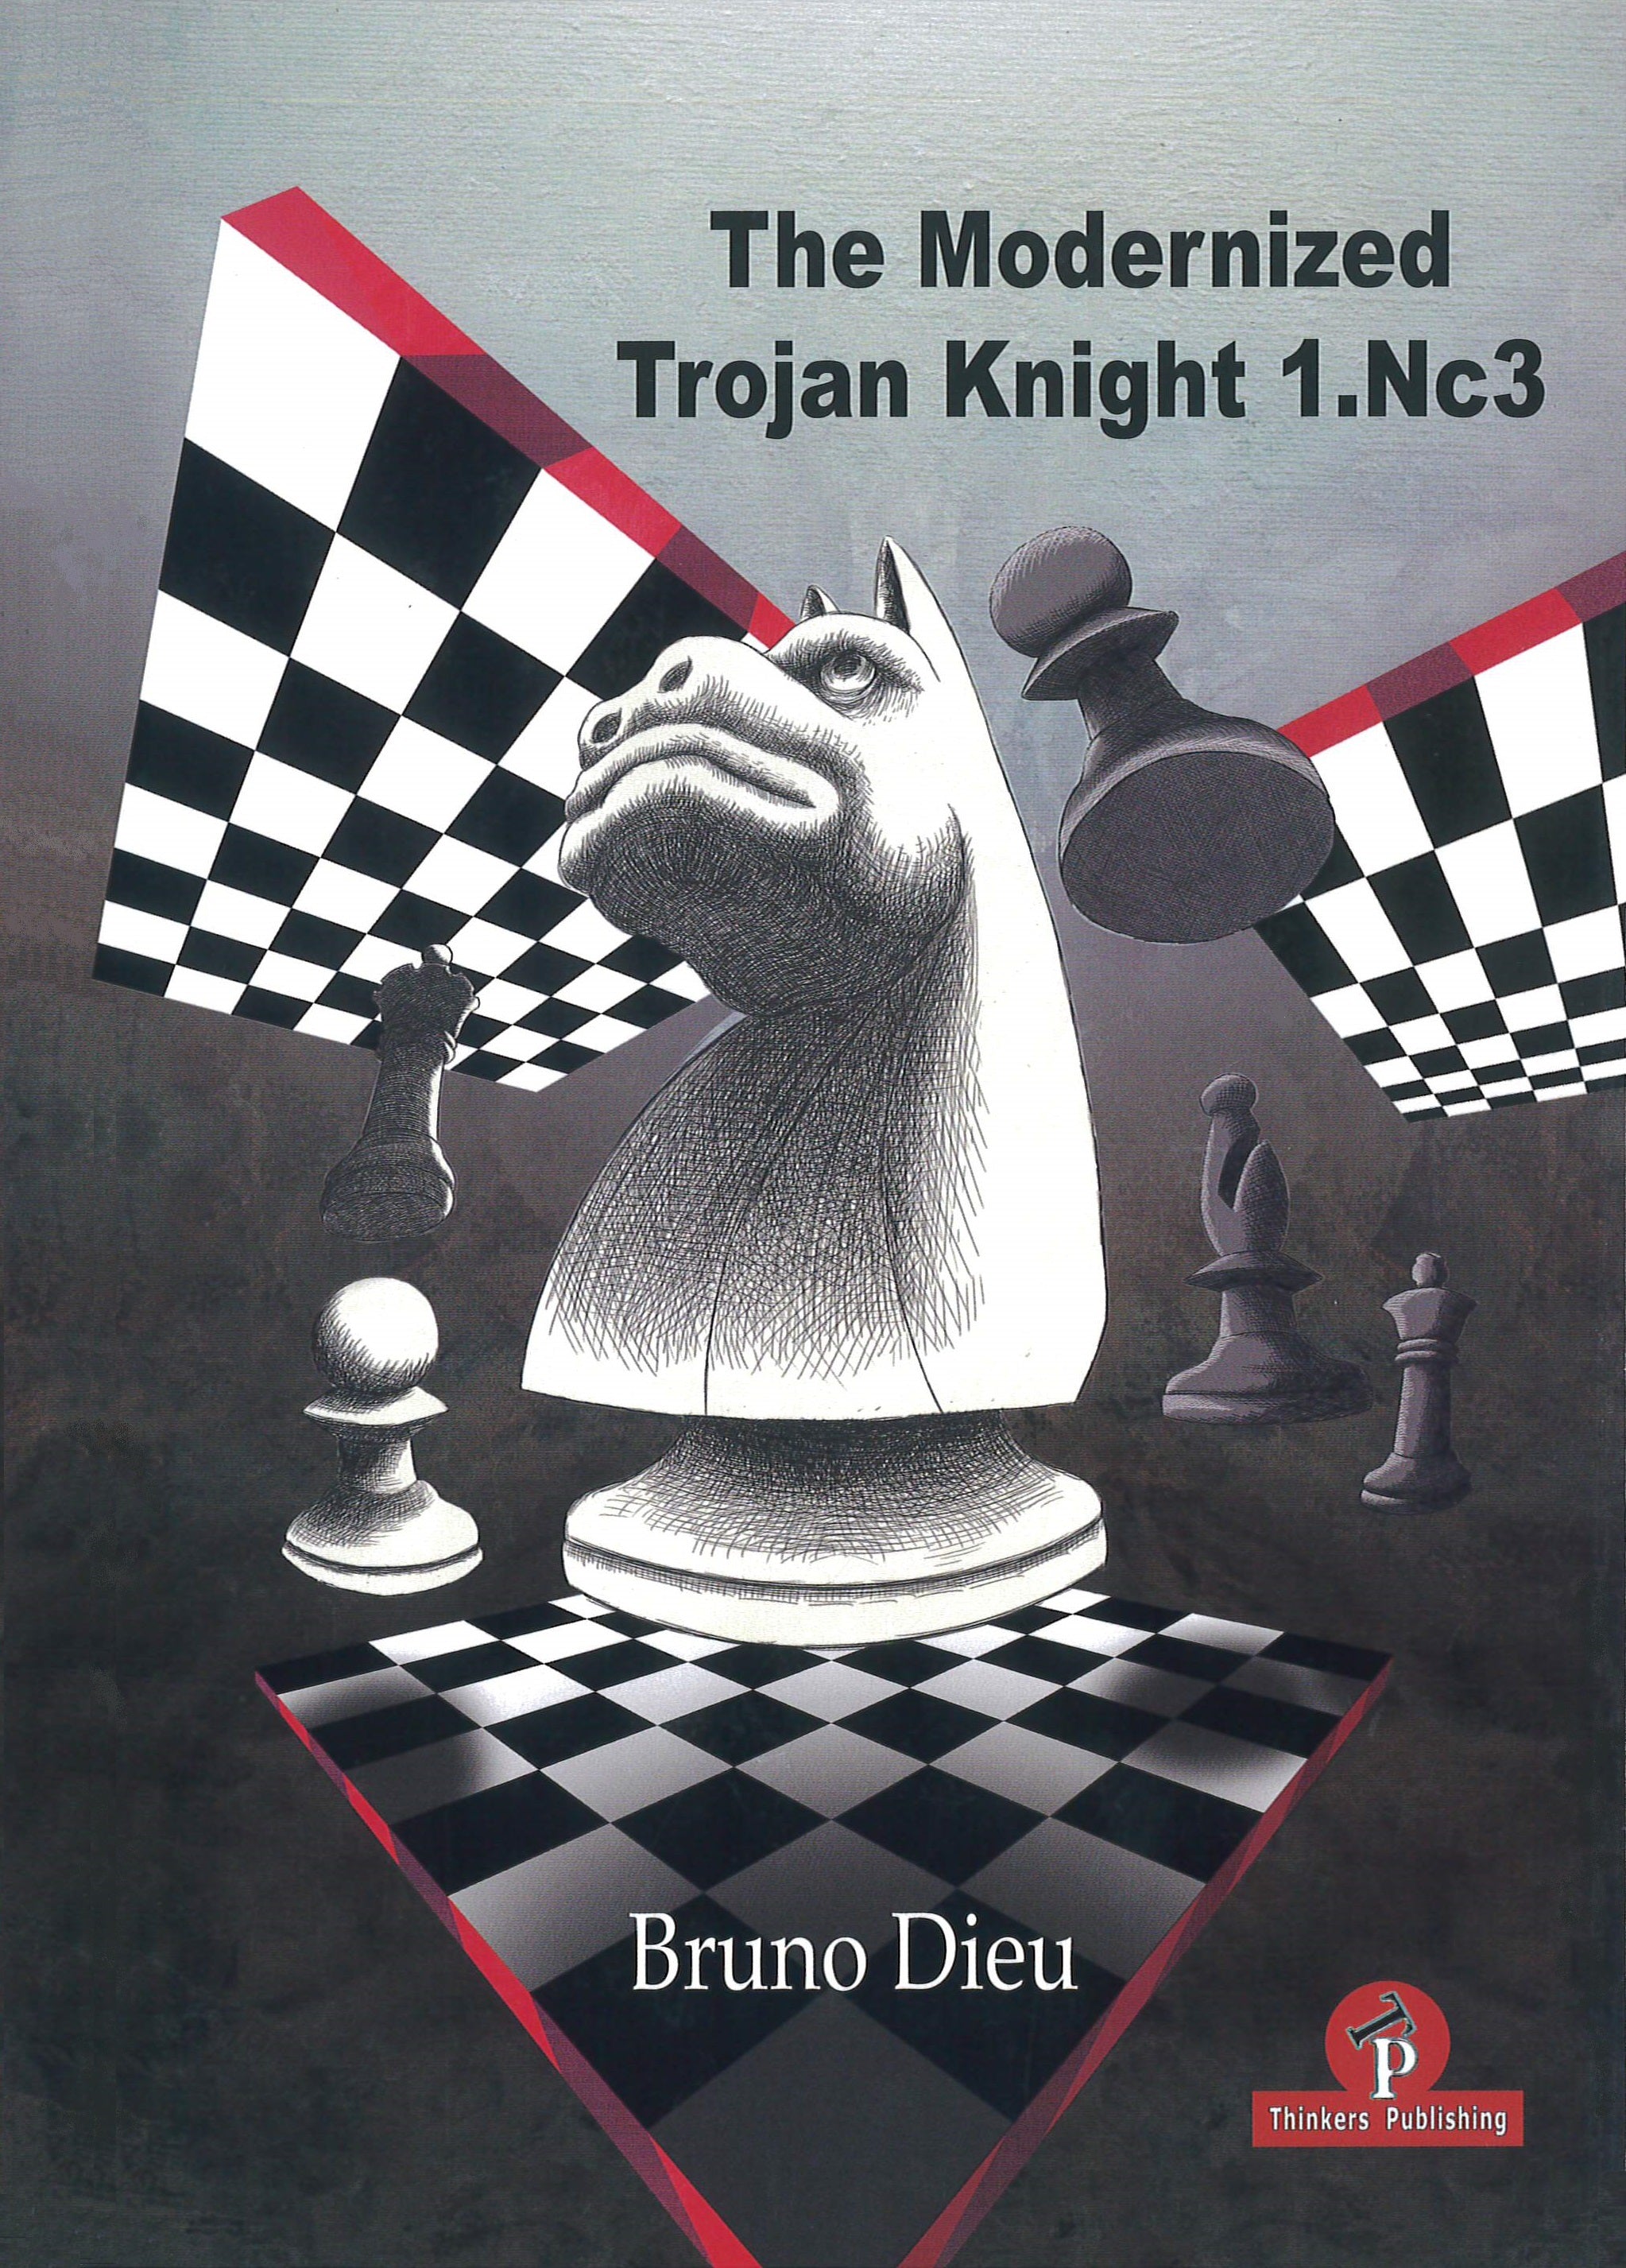 Dieu: The Modernized Trojan Knight 1.Nc3